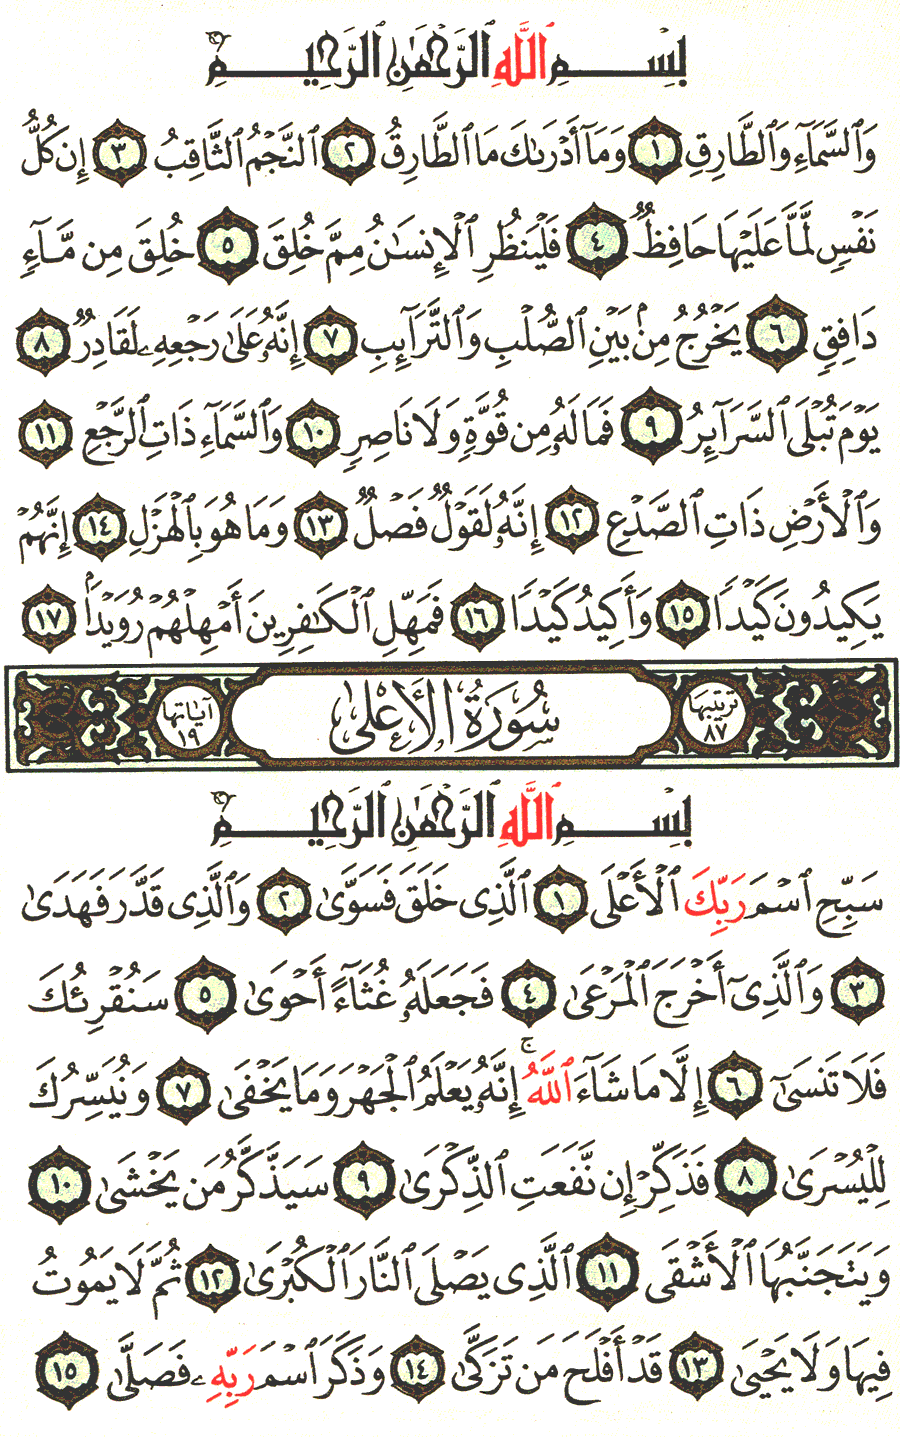 الصفحة رقم 591 من القرآن الكريم مكتوبة من المصحف